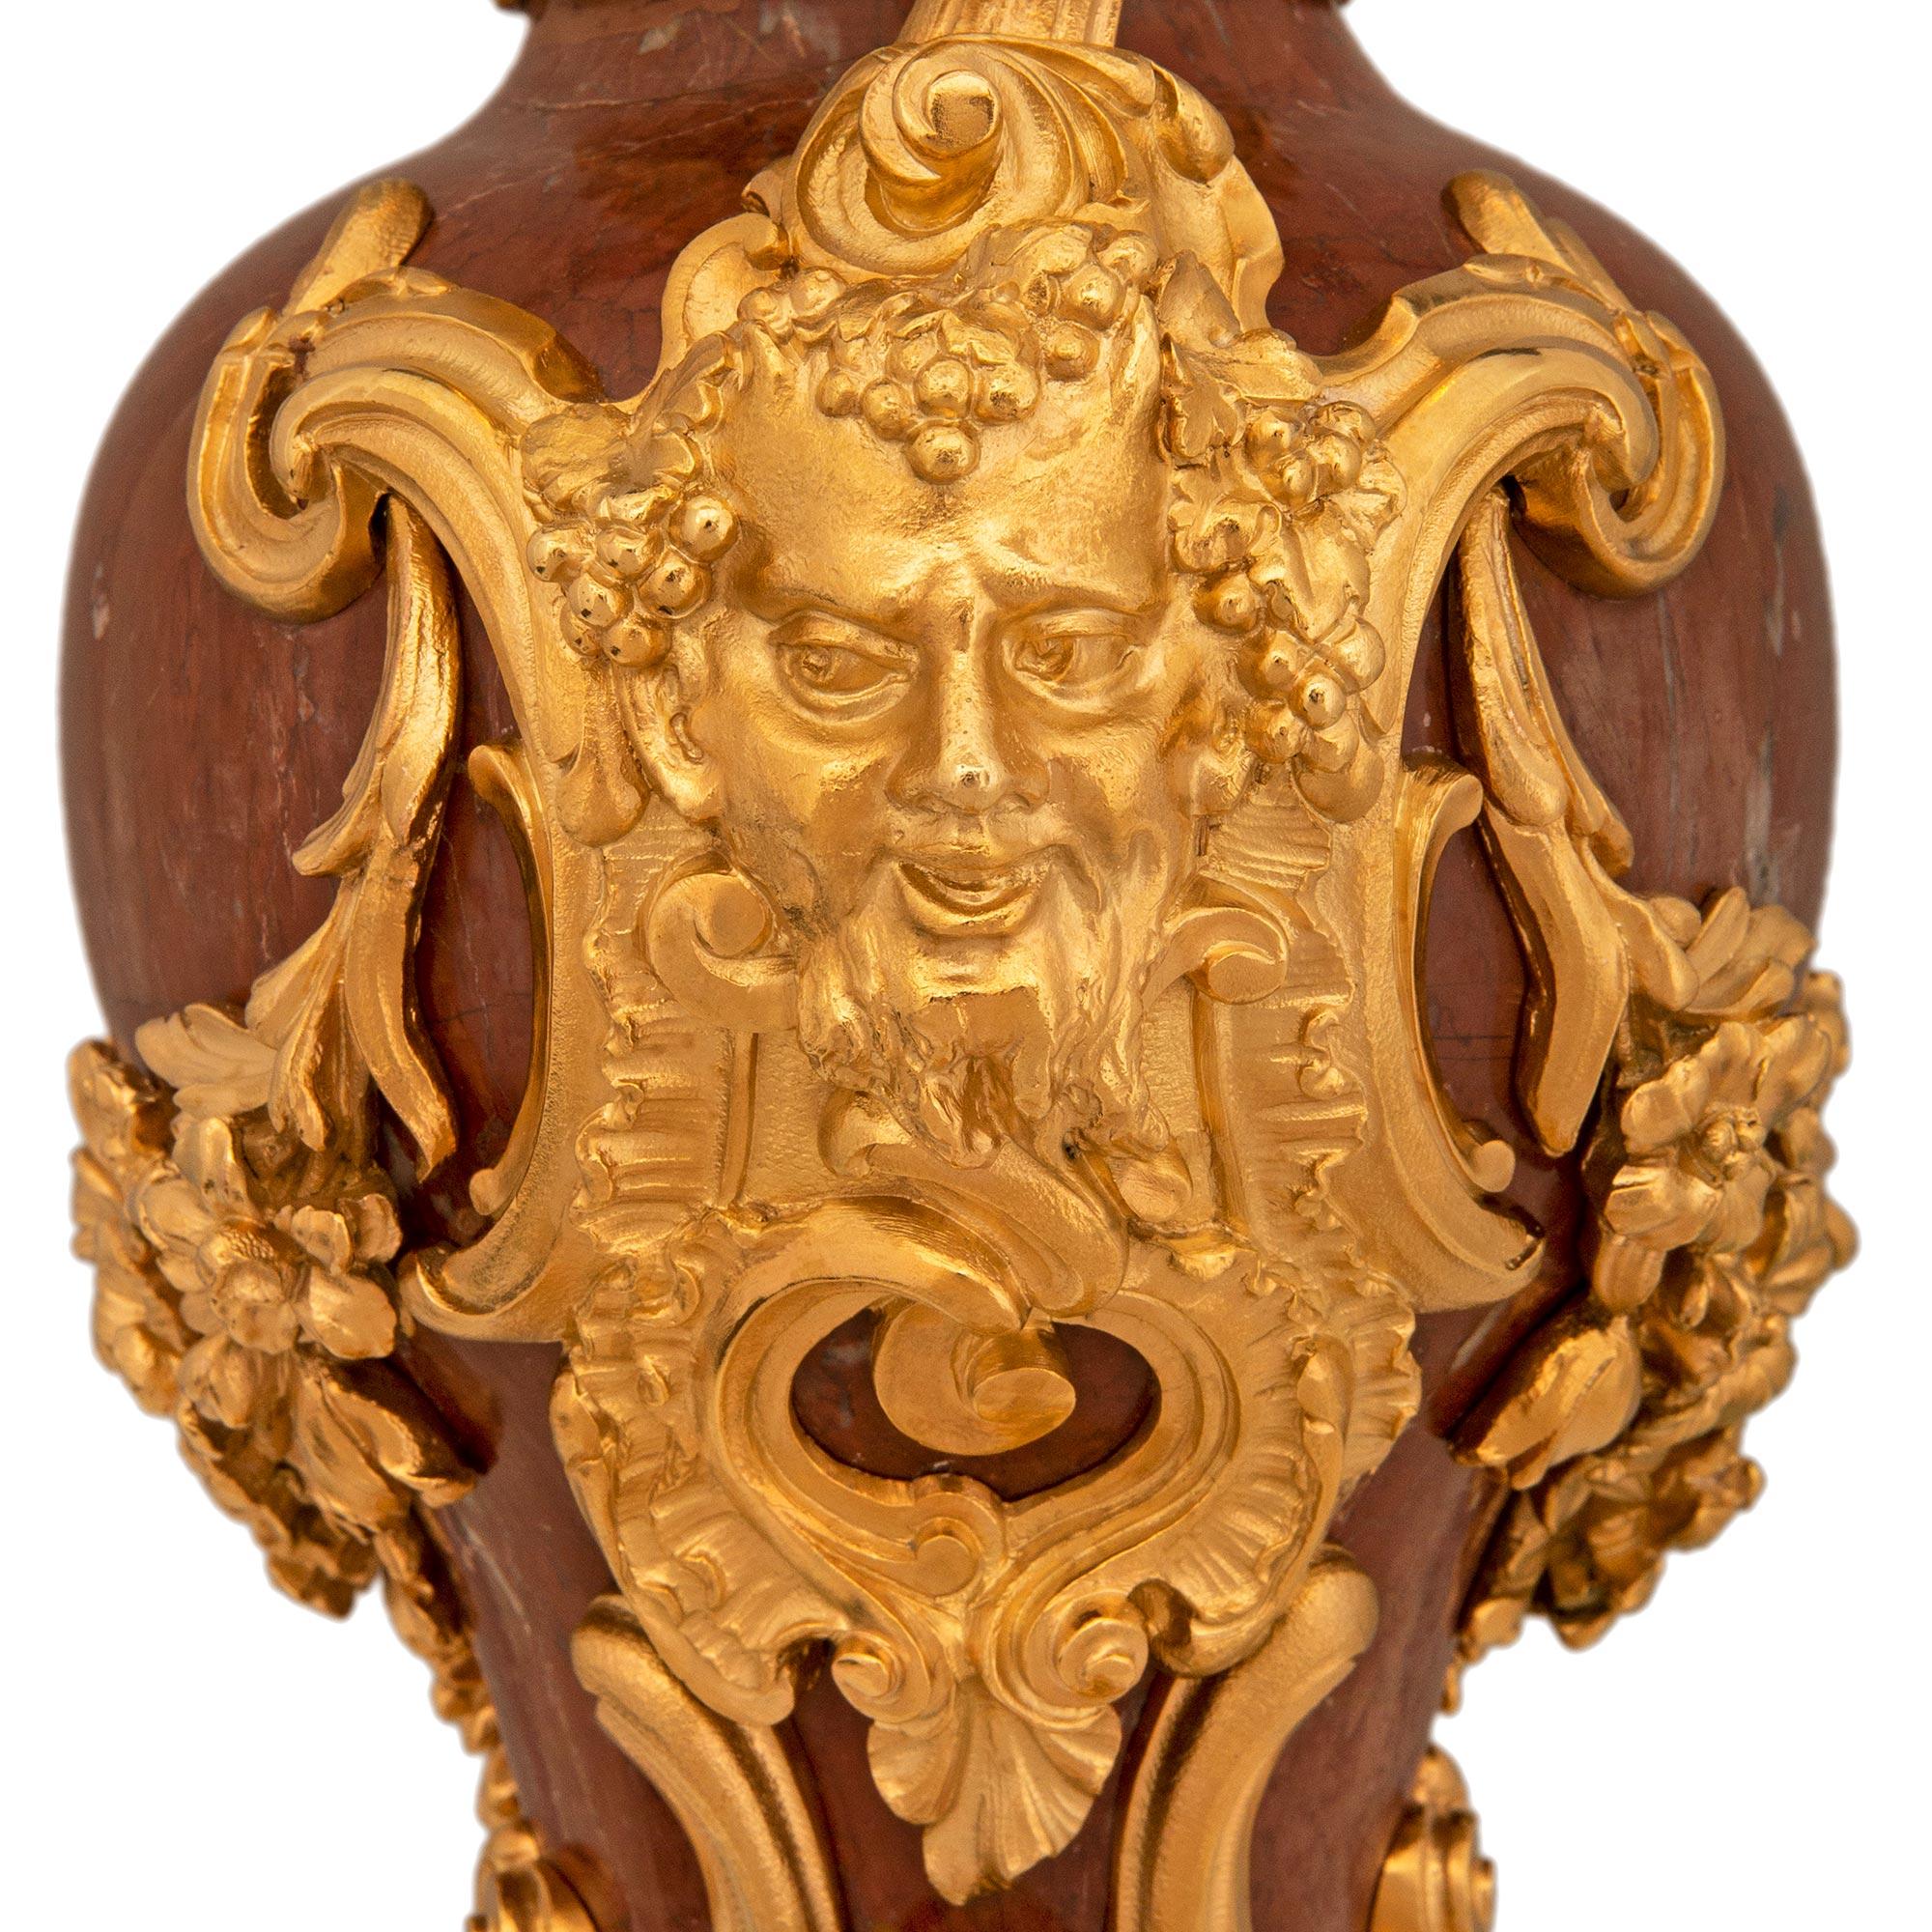 Une superbe paire de lampes en bronze doré et rosso Antico du 19ème siècle, de style Louis XV. Rosso Antico et Ormolu. Chaque urne asymétrique montée en lampe est surmontée d'une base en bronze doré percée, ornée de feuilles d'acanthe enroulées et